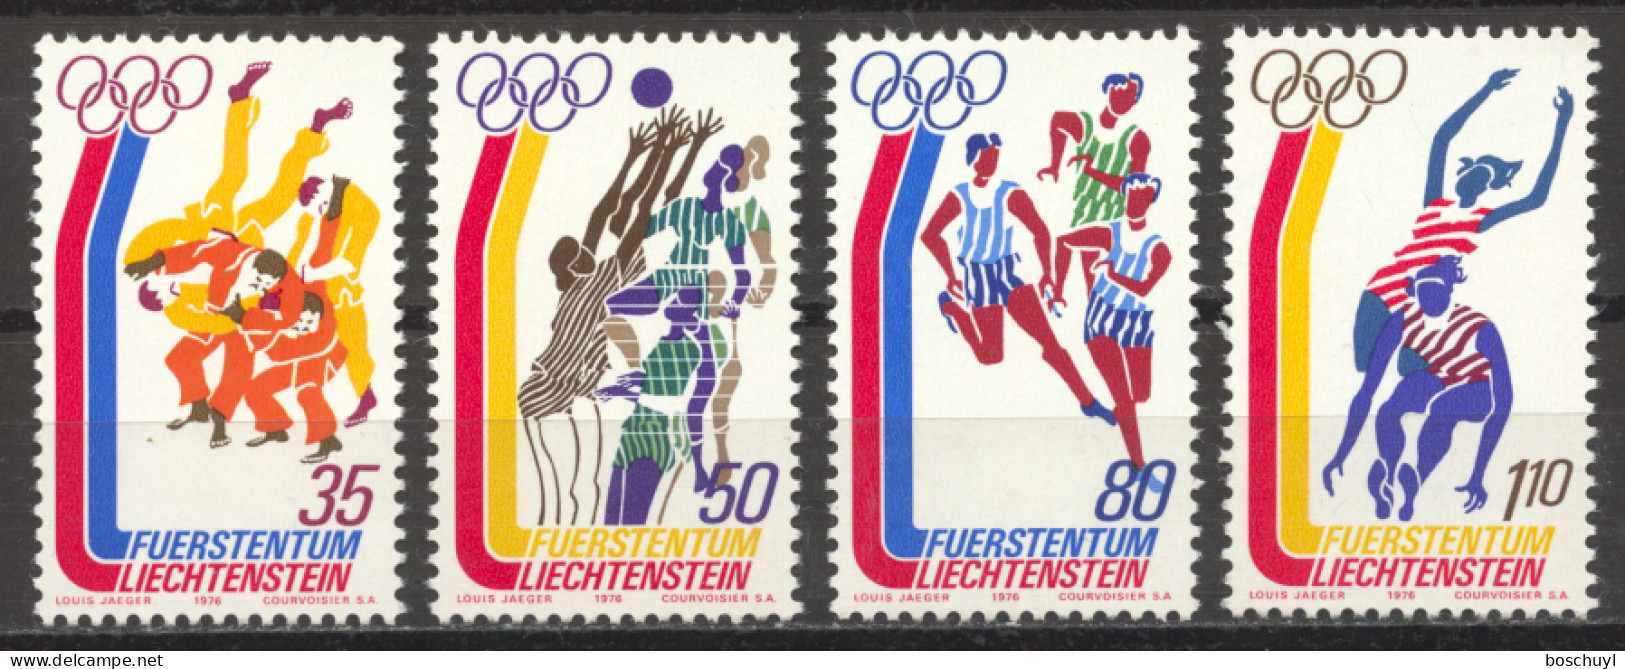 Liechtenstein, 1976, Olympic Summer Games Montreal, Sports, MNH, Michel 651-654 - Nuevos